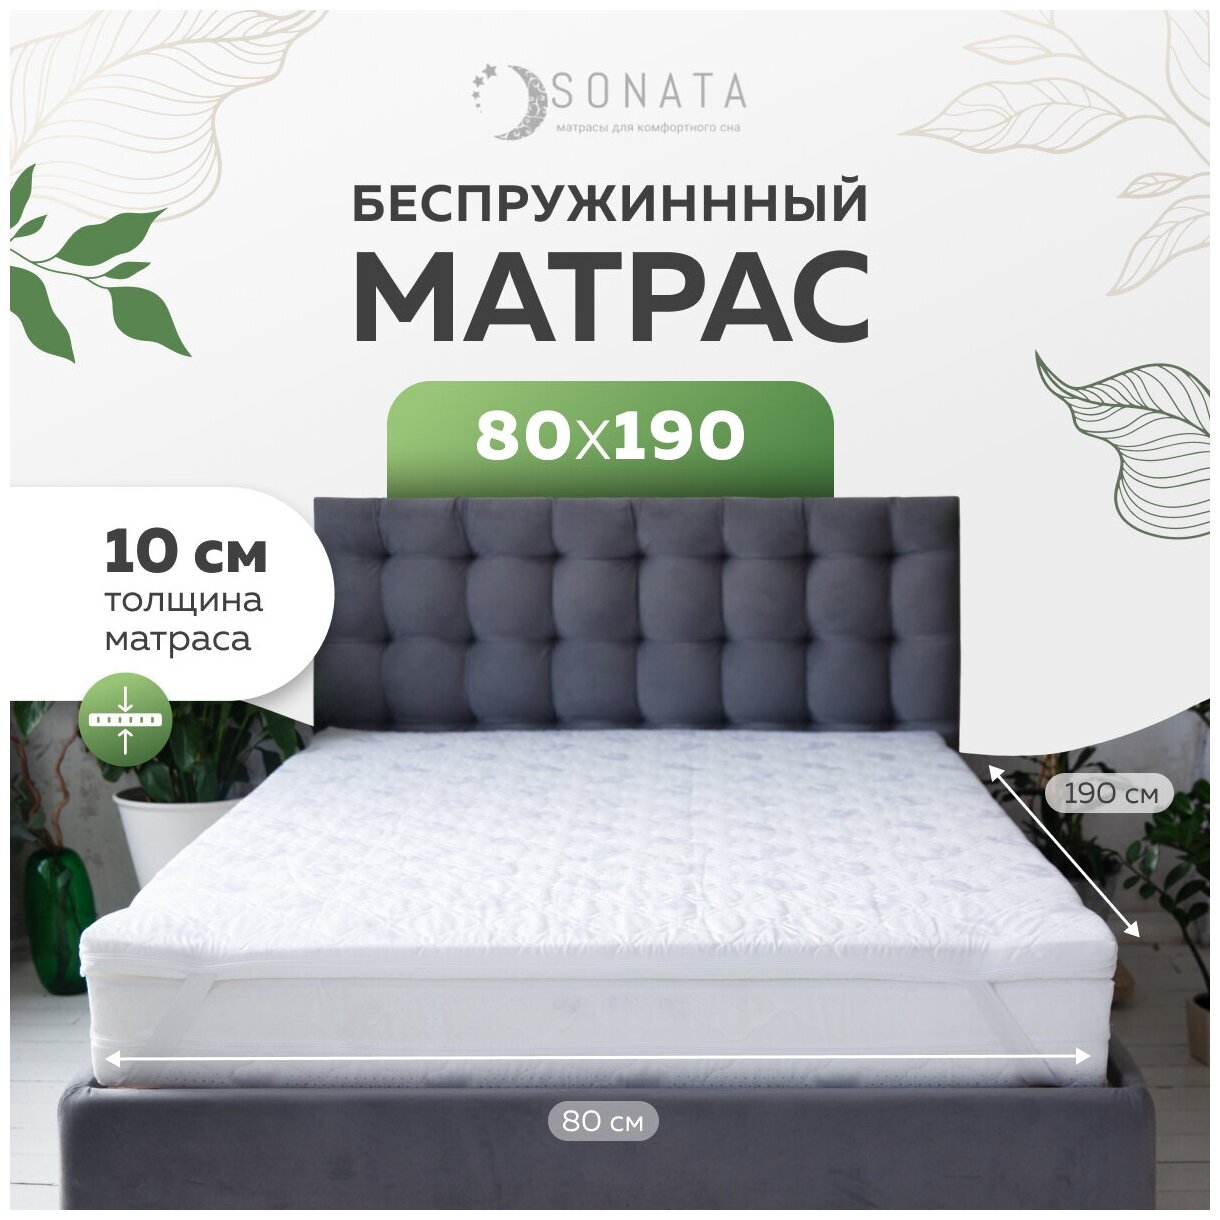 Матрас для кровати SONATA 180 x 190 двуспальный беспружинный топпер диванный 180 на 190 ортопедический 180 х 190